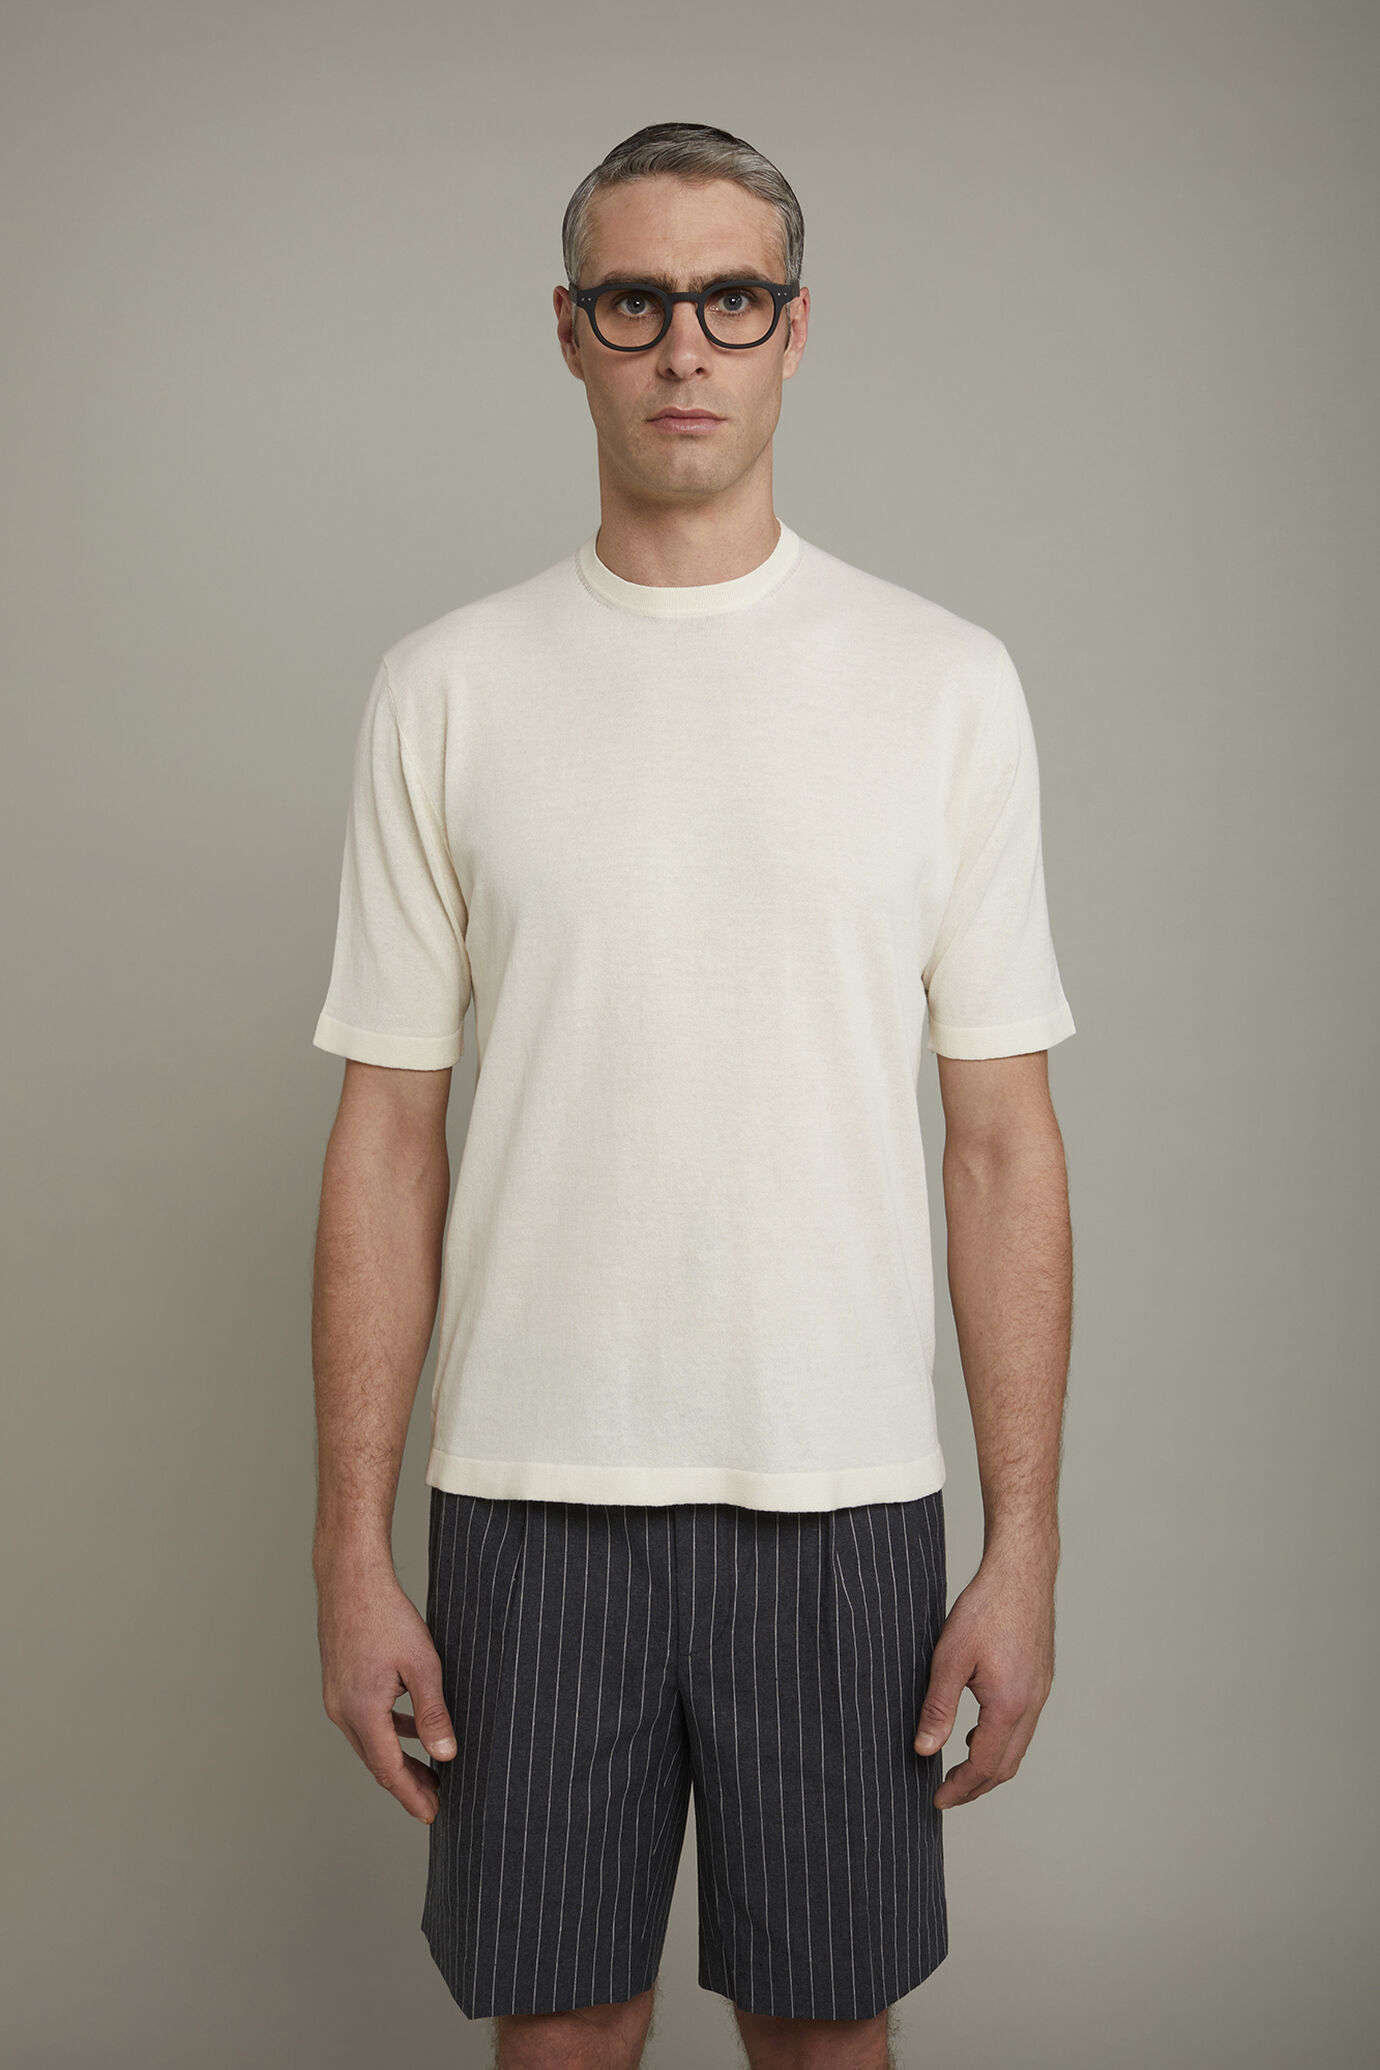 Herren-T-Shirt aus 100 % Baumwolle mit kurzen Ärmeln in normaler Passform